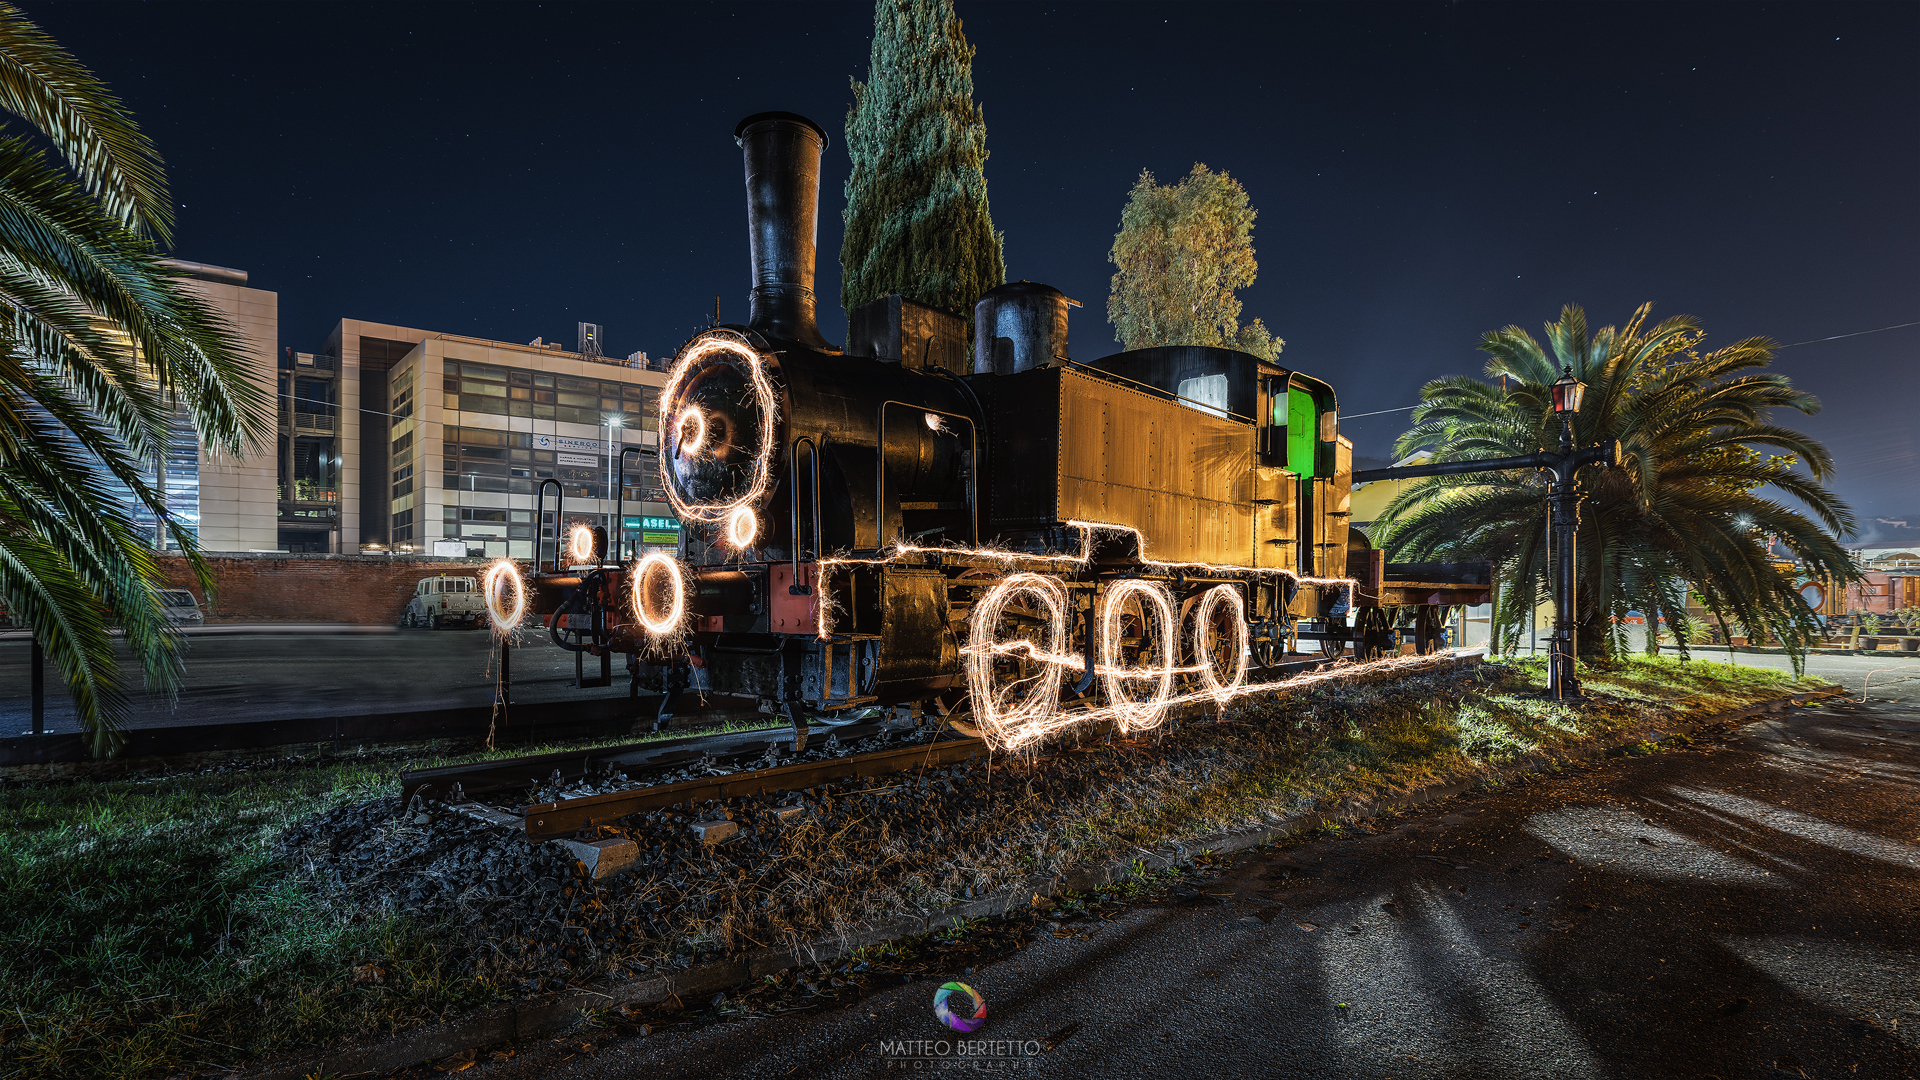 Monumental Locomotive - Fondazione FS La Spezia...